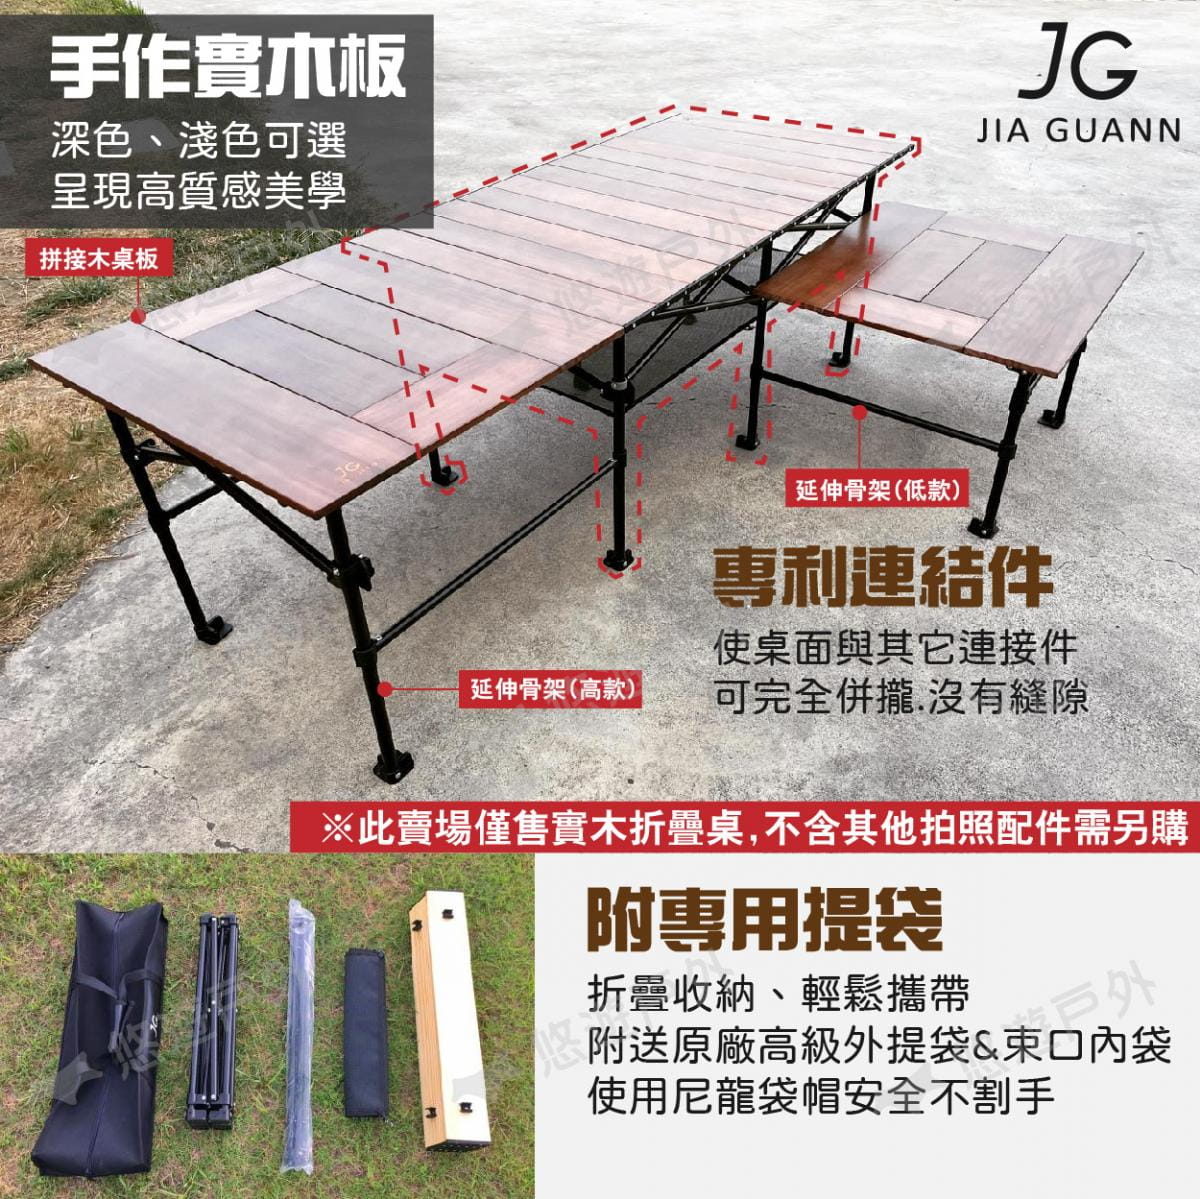 【JG Outdoor】T1實木折疊收納桌-長方形款 淺色 JG-T0010 悠遊戶外 6